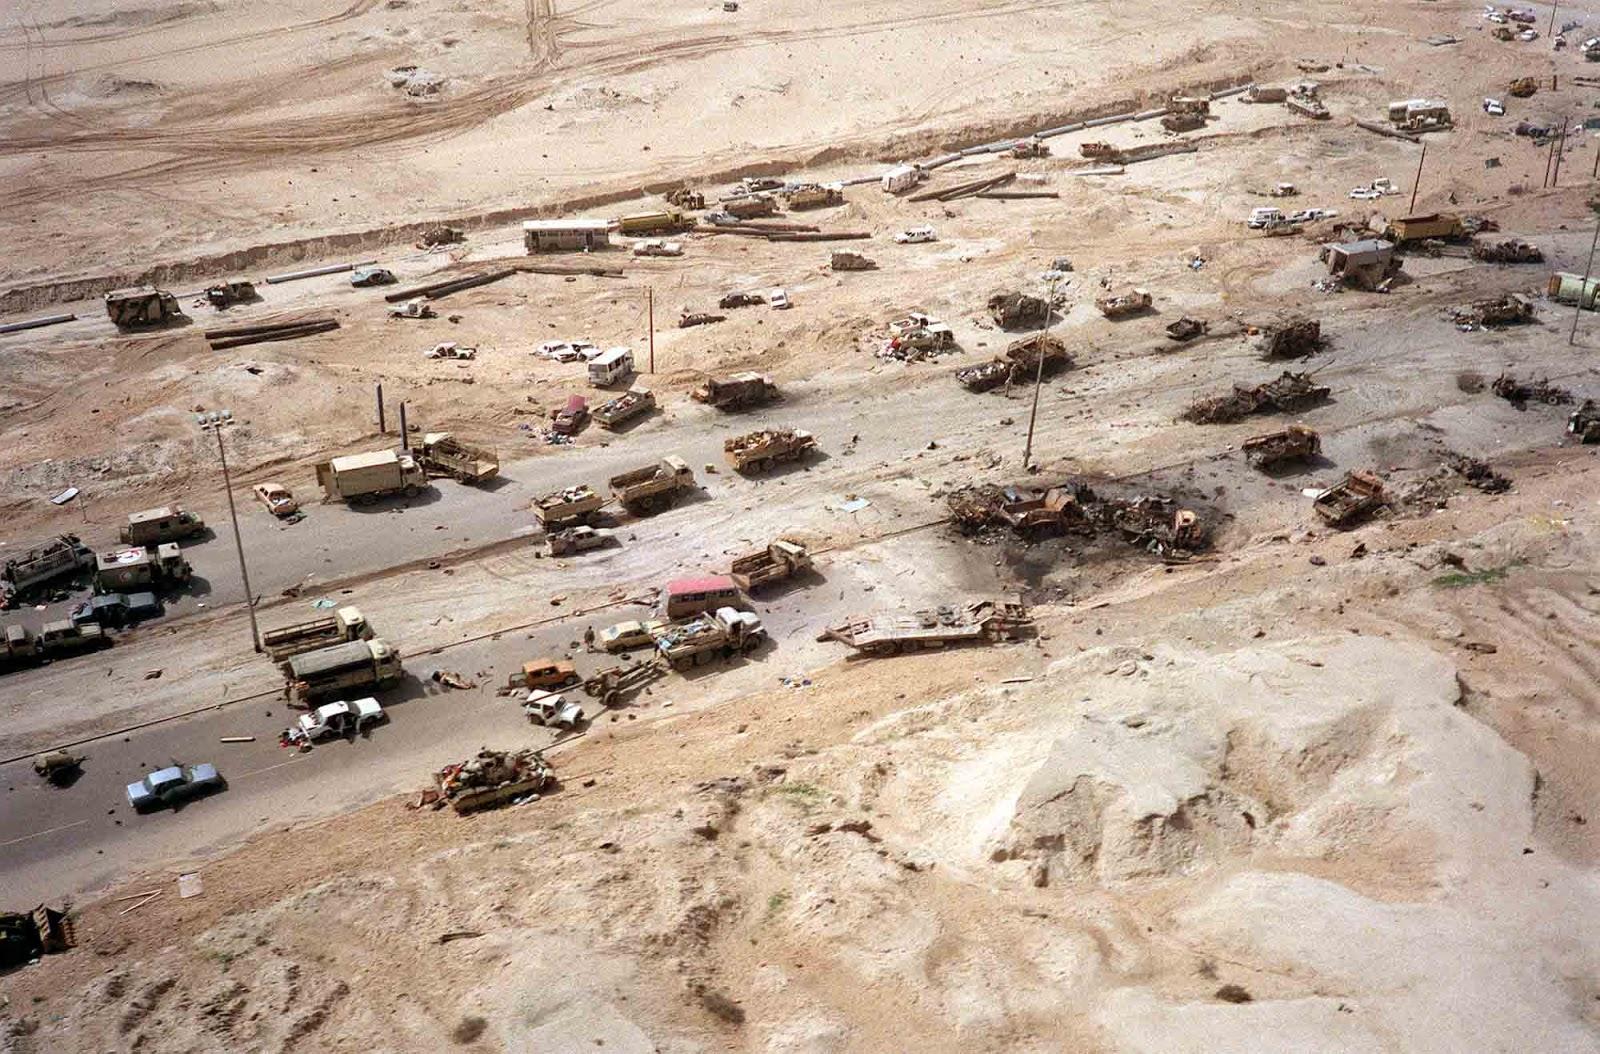 L'autoroute de la Mort, le résultat des forces Américaines bombardement de retraite des forces Irakiennes, au Koweït, en 1991